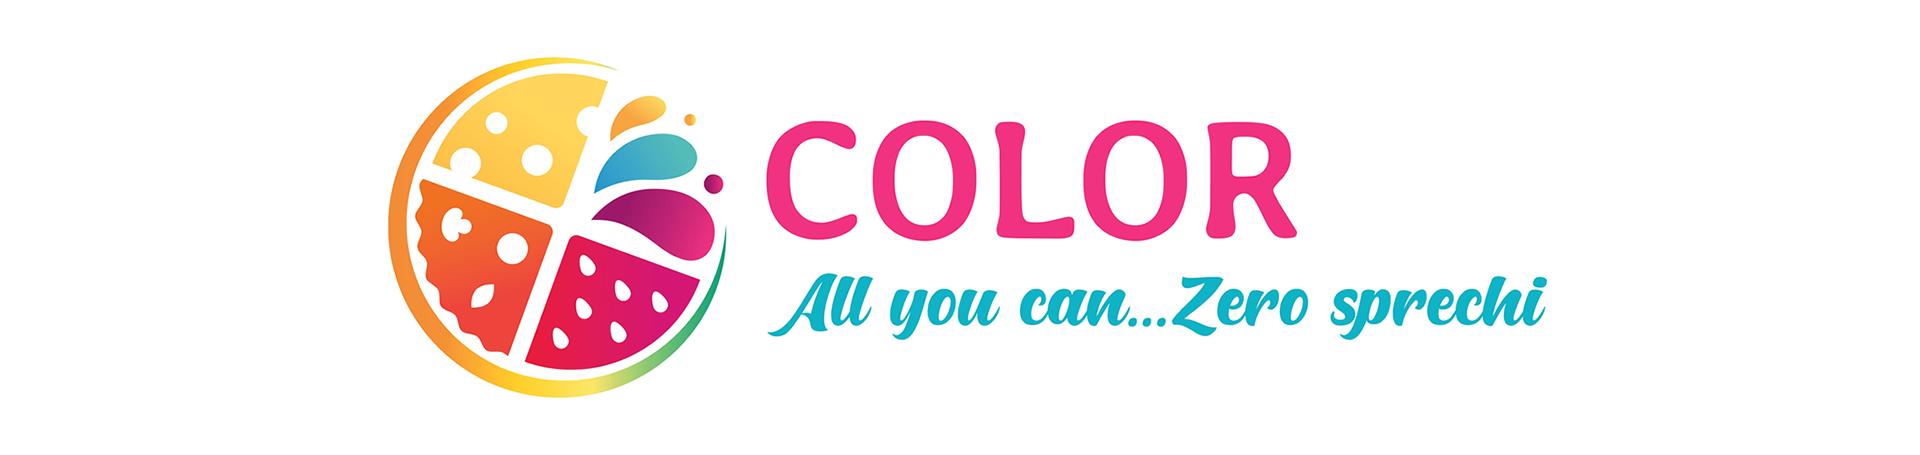 colorperlavillage it all-you-can-zero-spreco 009